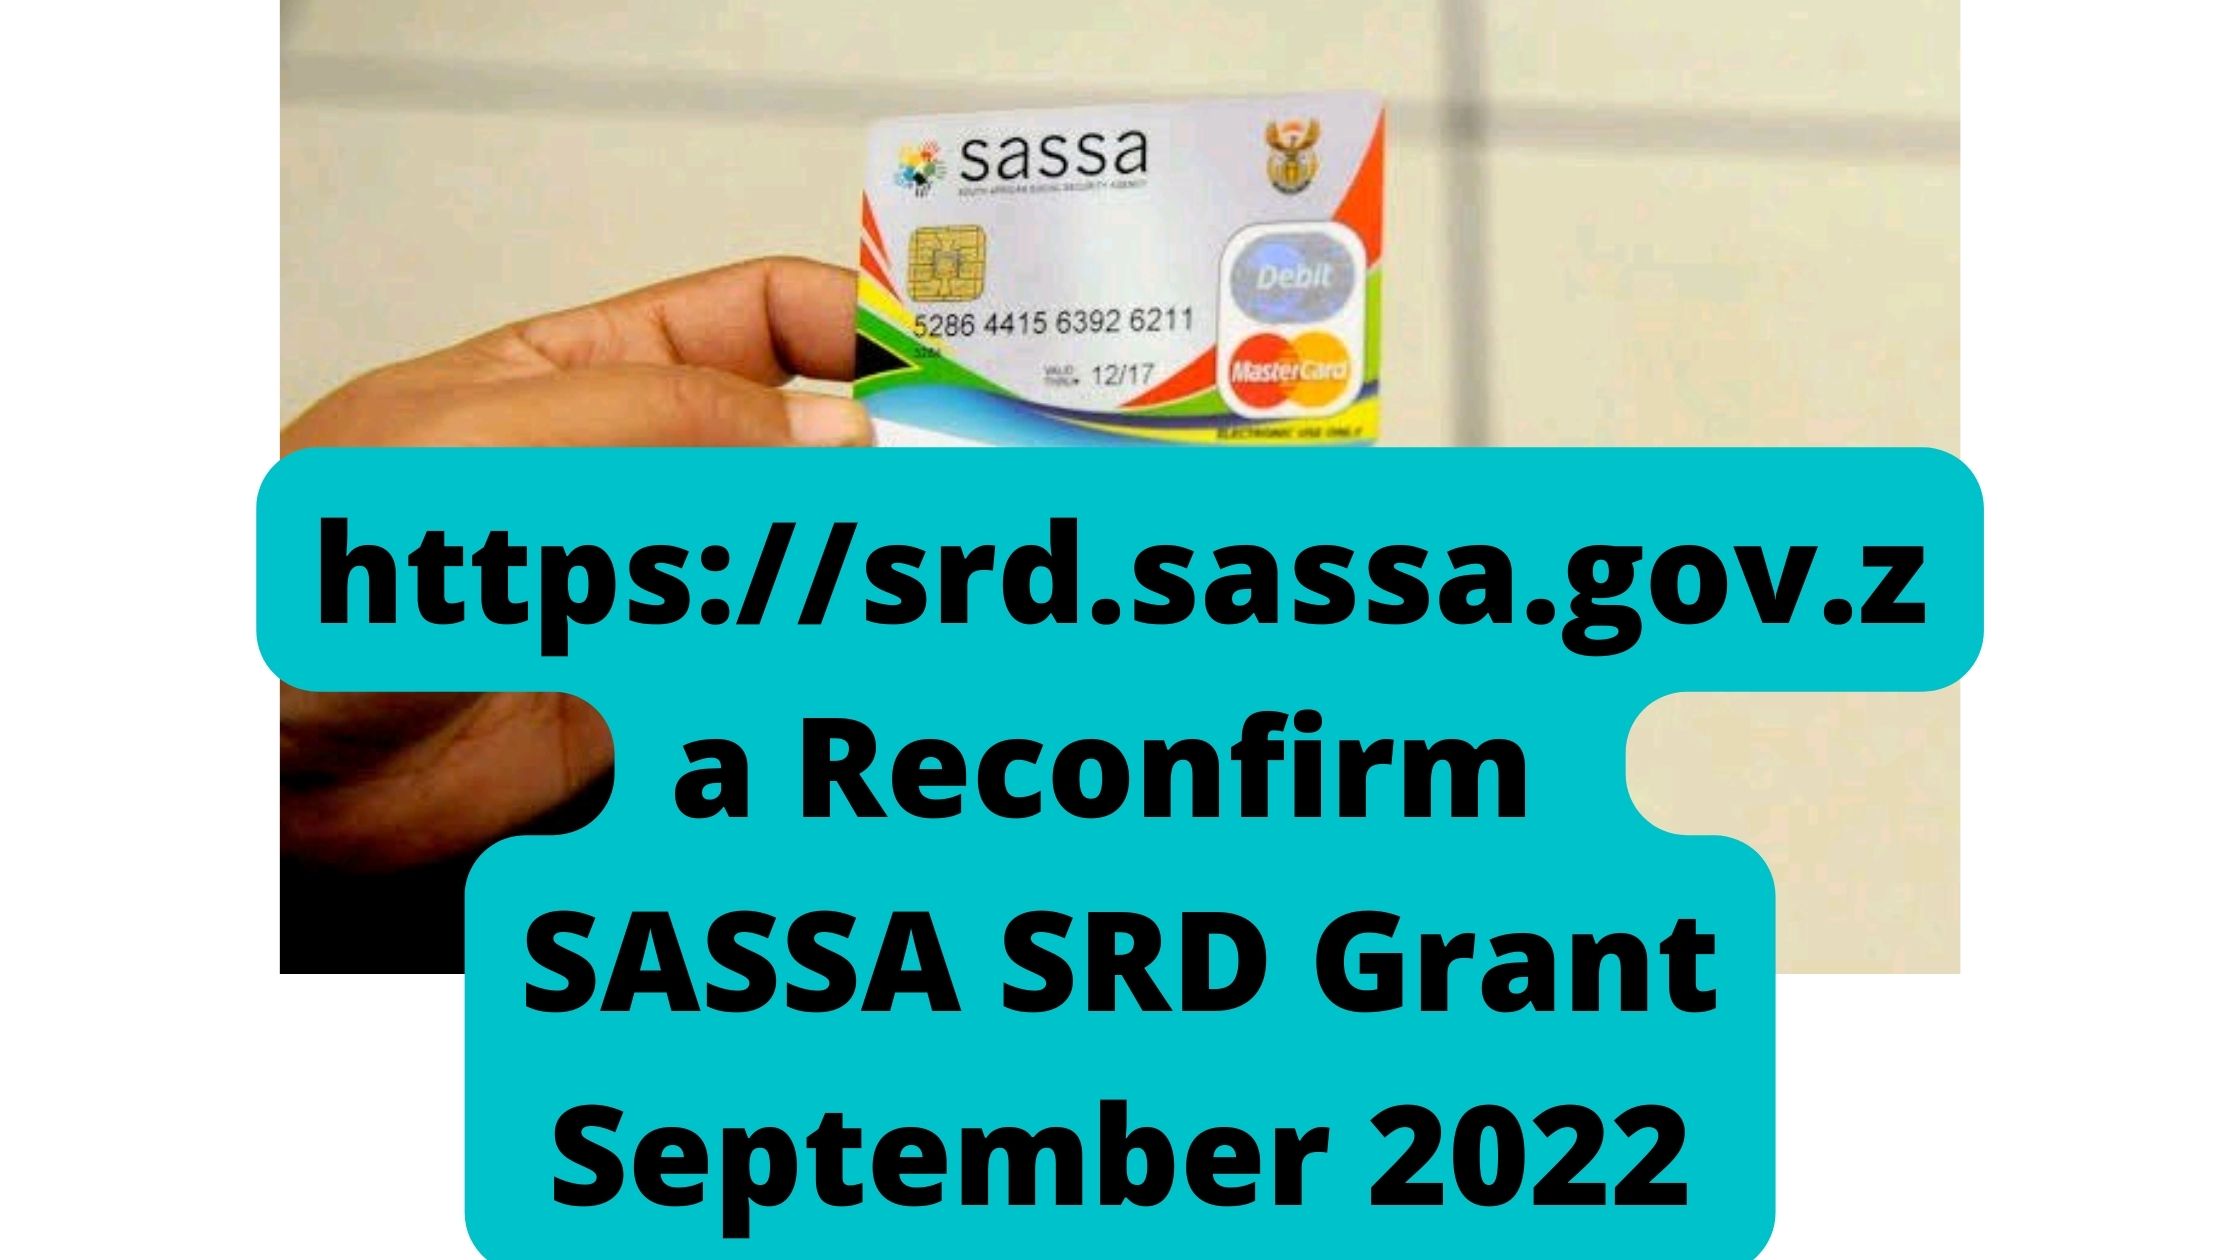 https://srd.sassa.gov.za Reconfirm SASSA SRD Grant September 2022